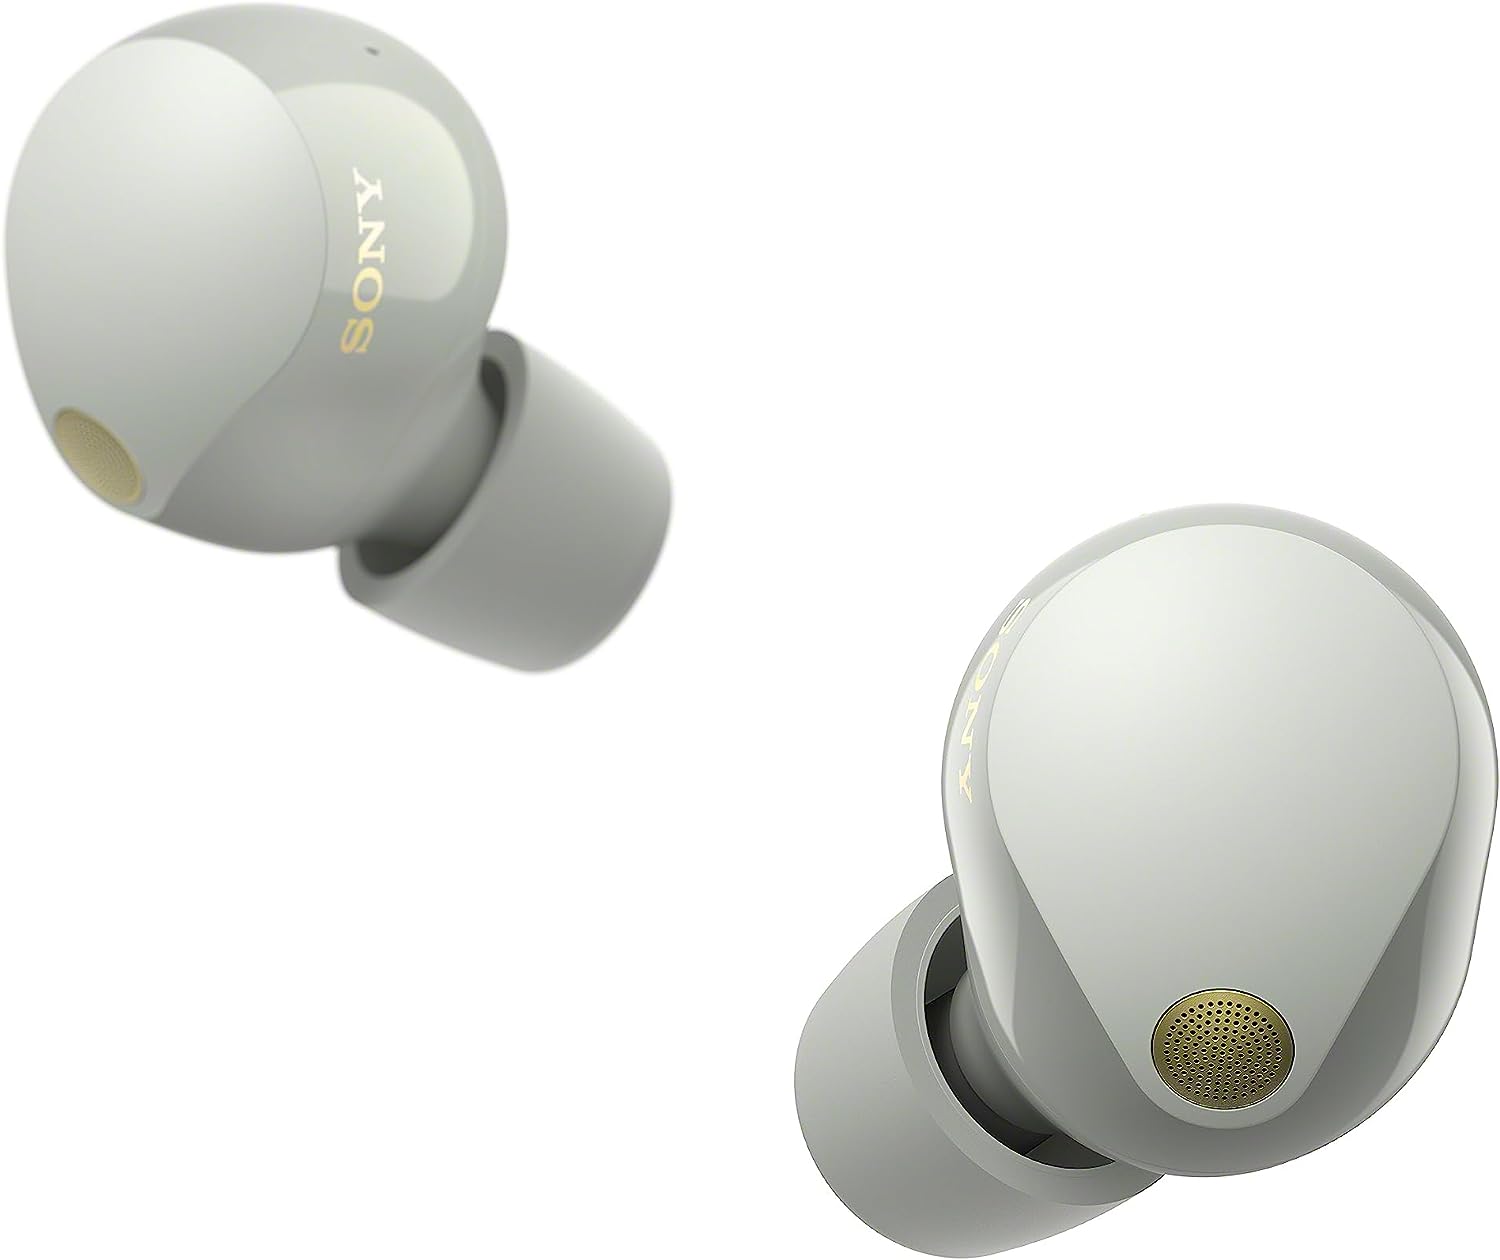 Sony WF-1000XM3 review: Superb true wireless earbuds